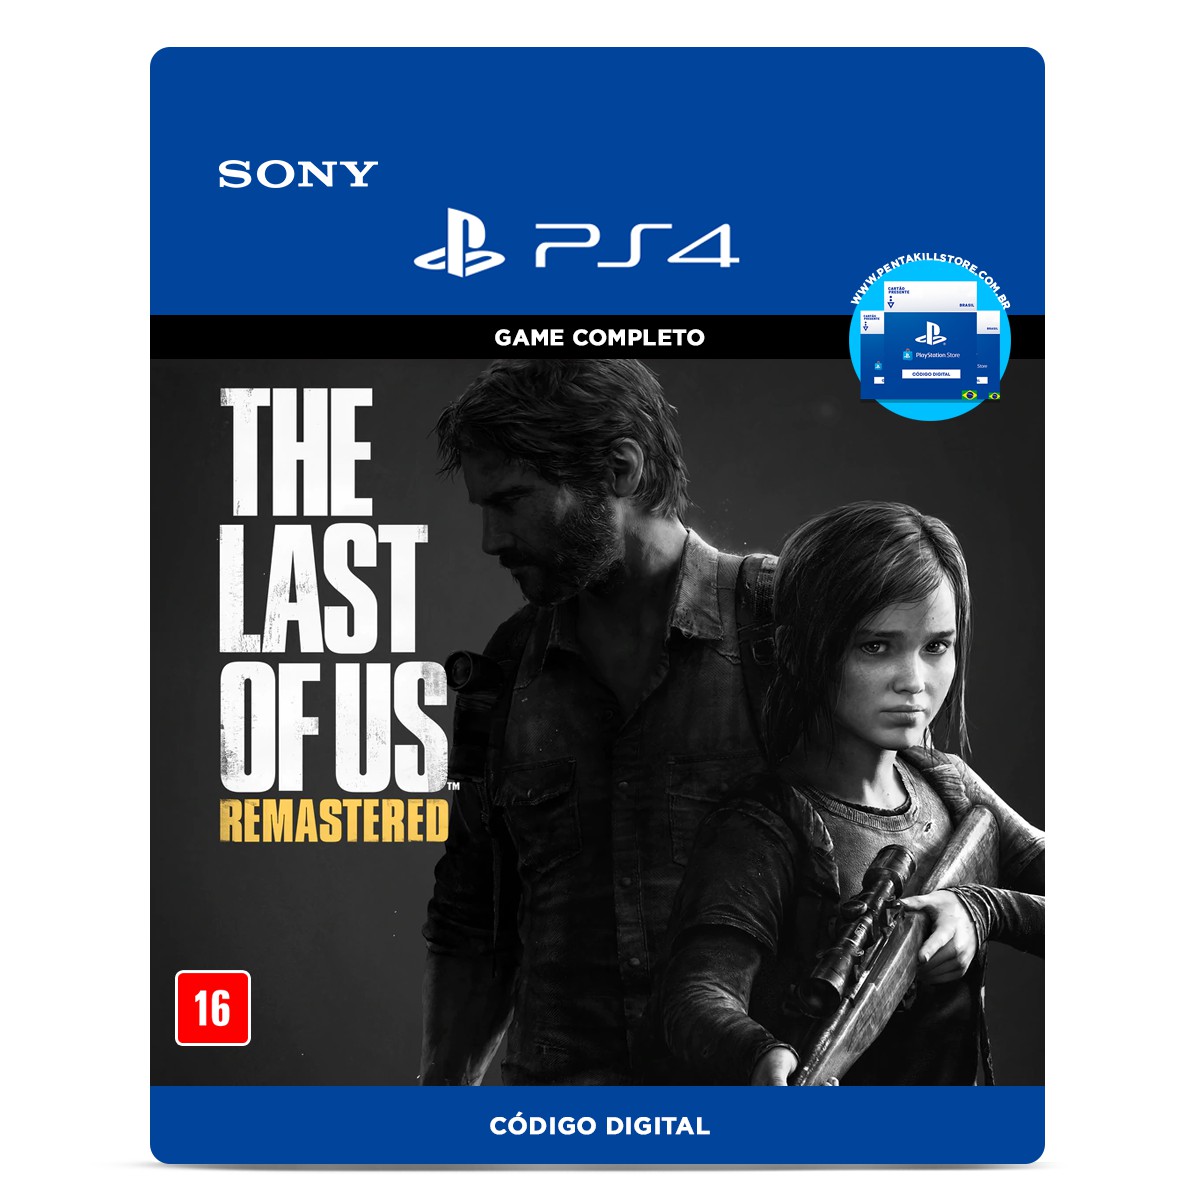 The Last of Us Remastered: veja as novidades da versão do game para PS4